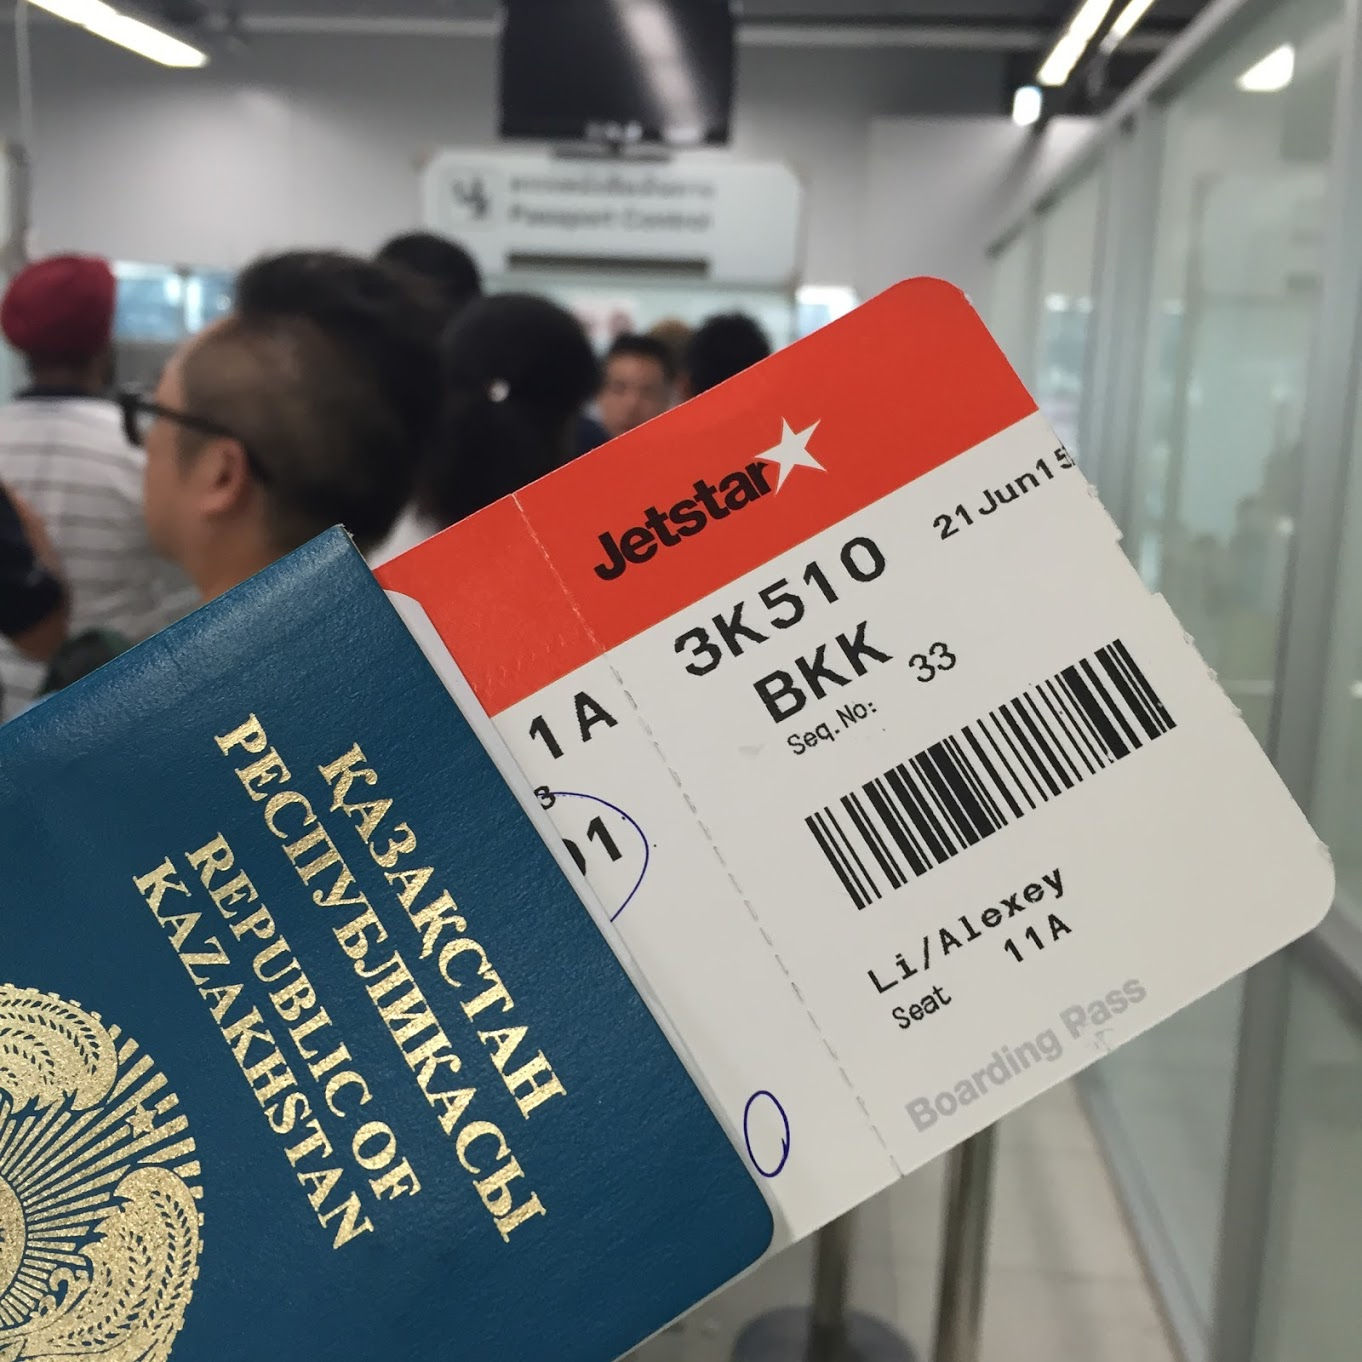 В казахстан можно без визы. Билеты в Казахстан на самолет.